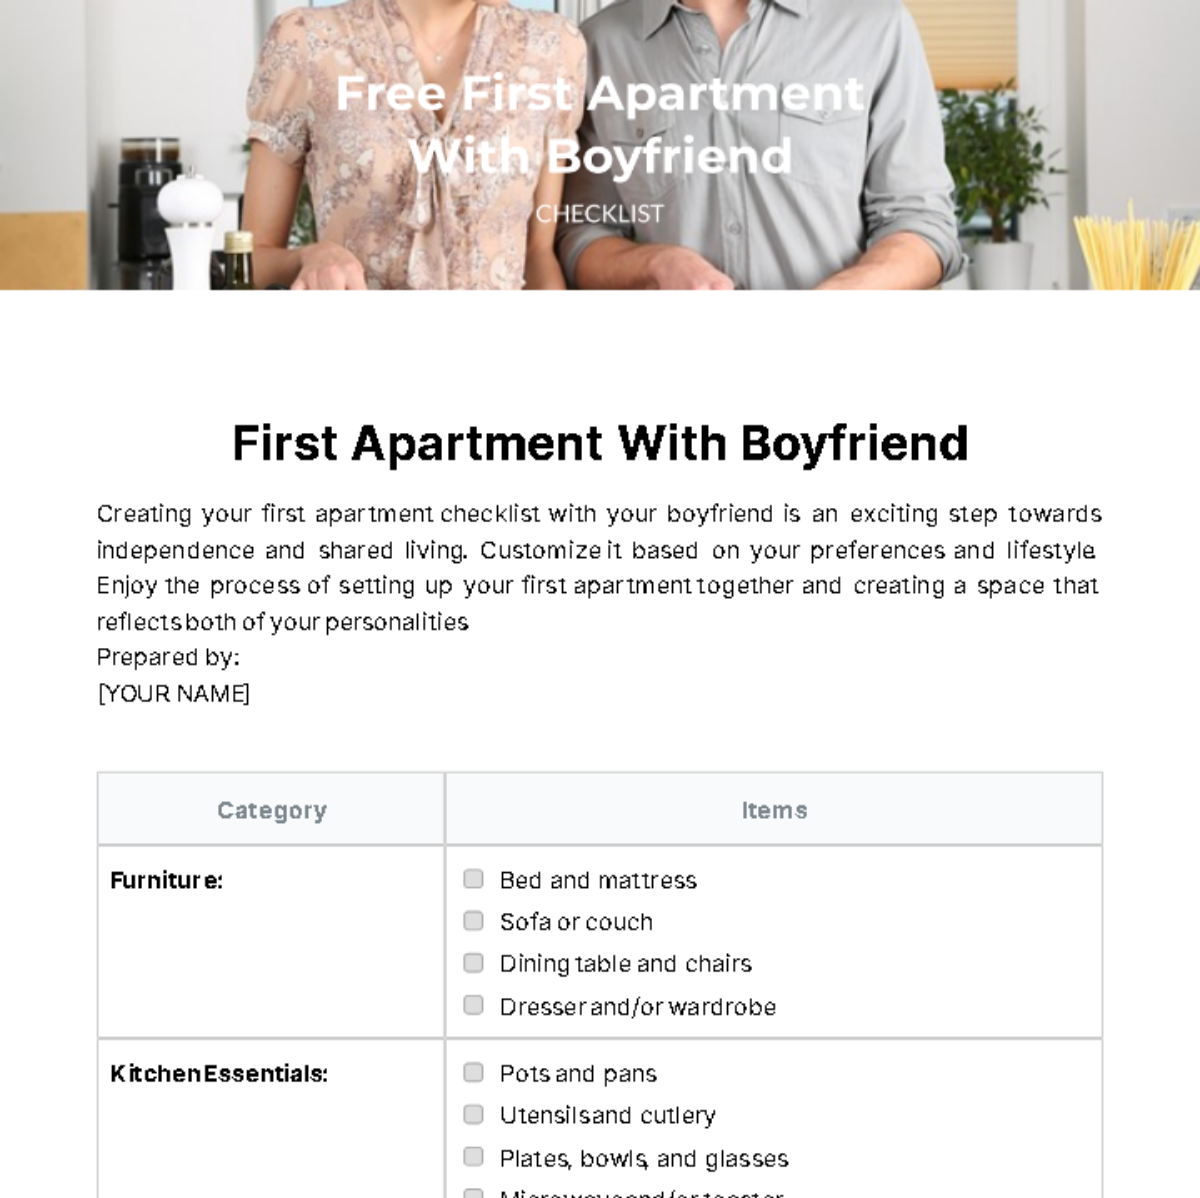 First Apartment With Boyfriend Checklist Template